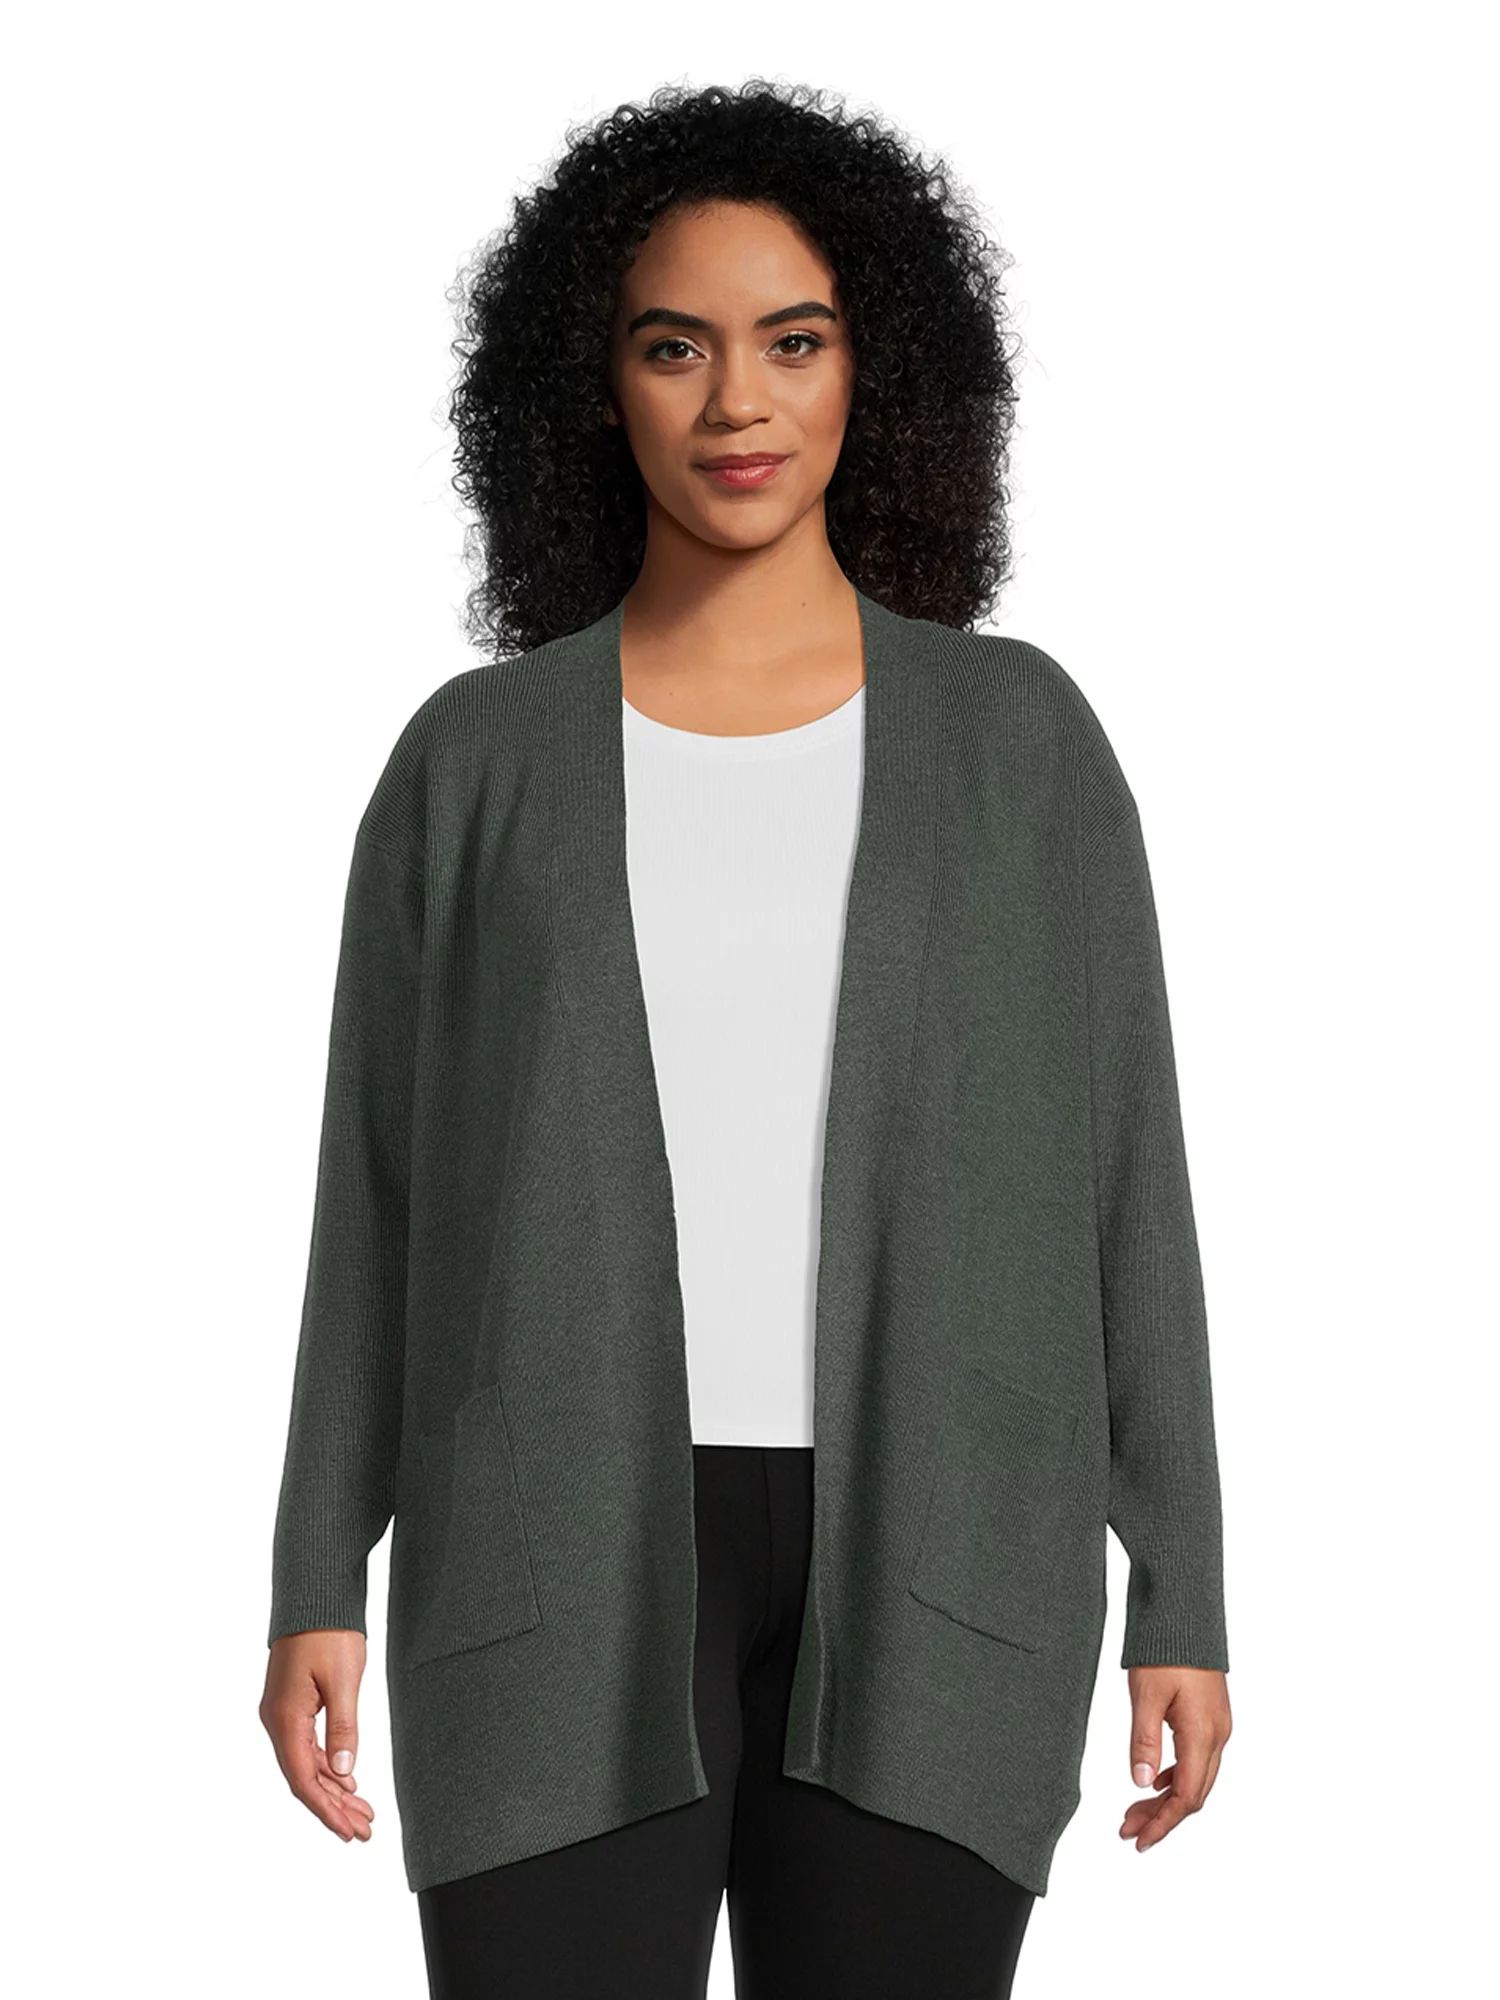 Terra & Sky Women's Plus Size Open Front Cardigan Sweater, Lightweight | Walmart (US)